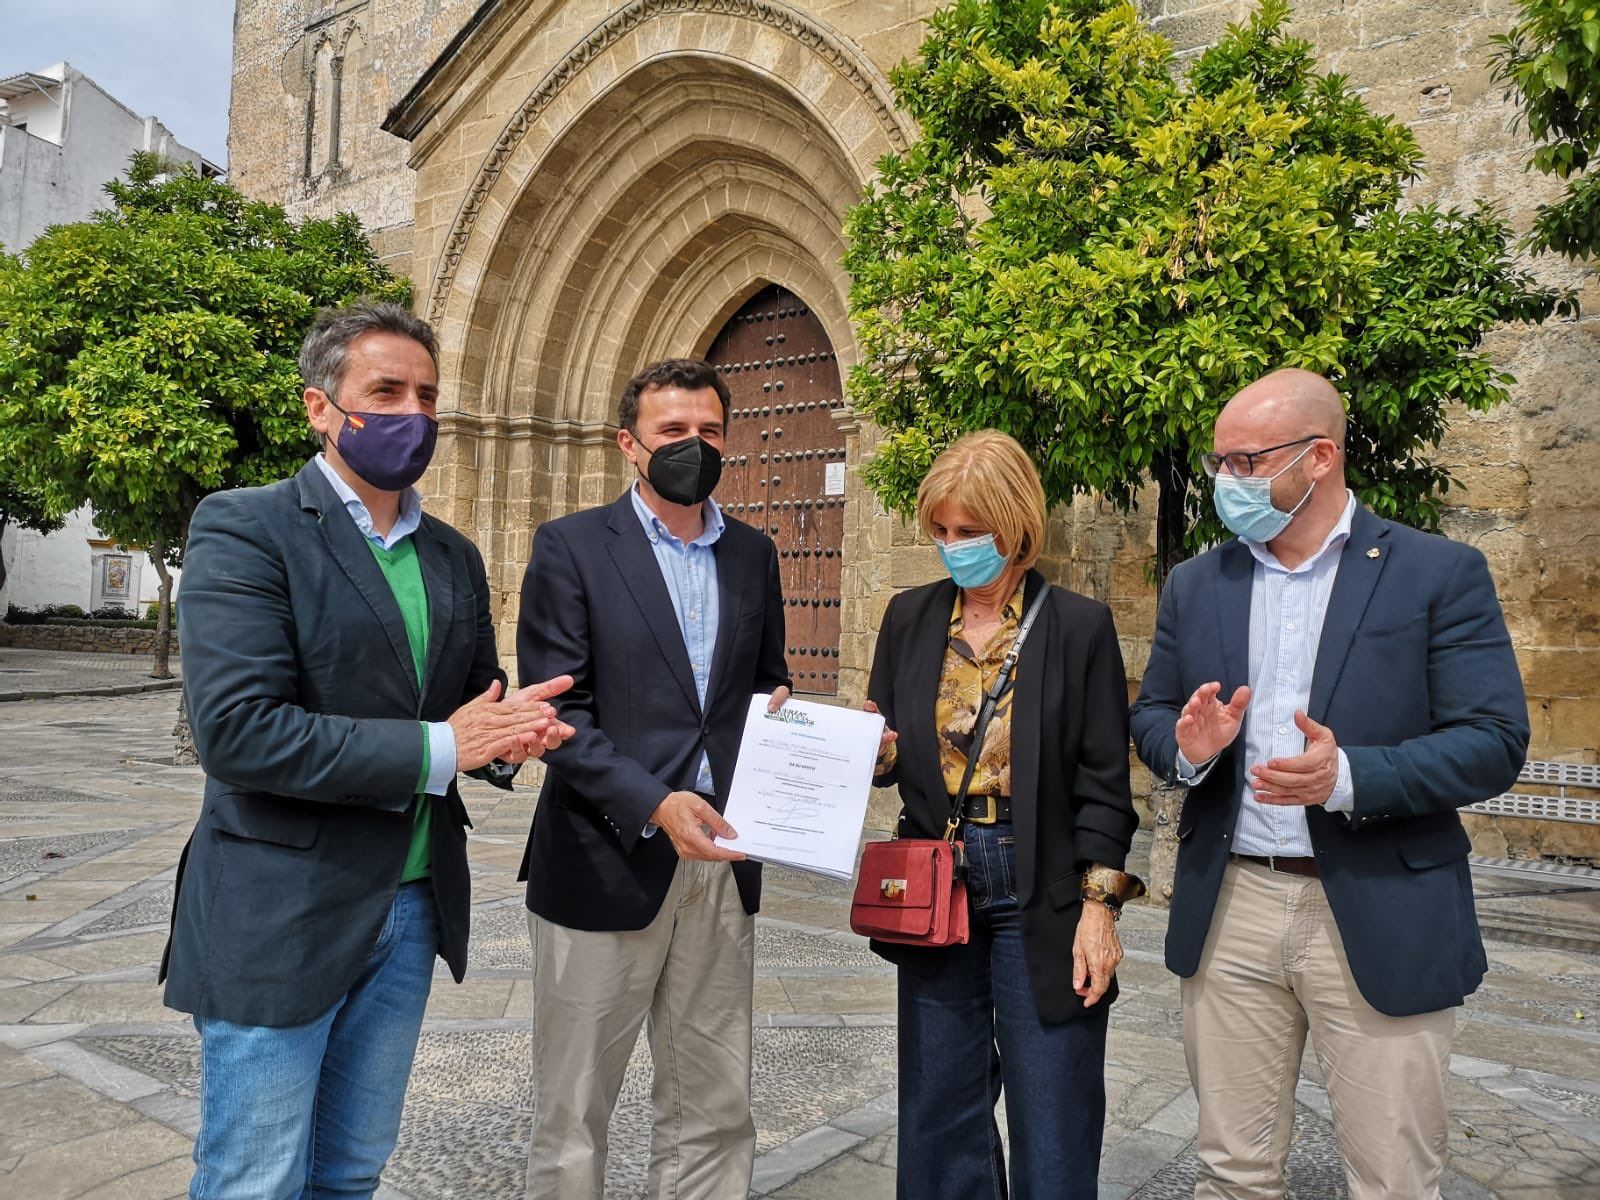 Antonio Saldaña y María José García-Pelayo entregan a Bruno García y Germán Beardo los avales del PP de Jerez para su candidatura en el congreso provincial extraordinario de mayo.